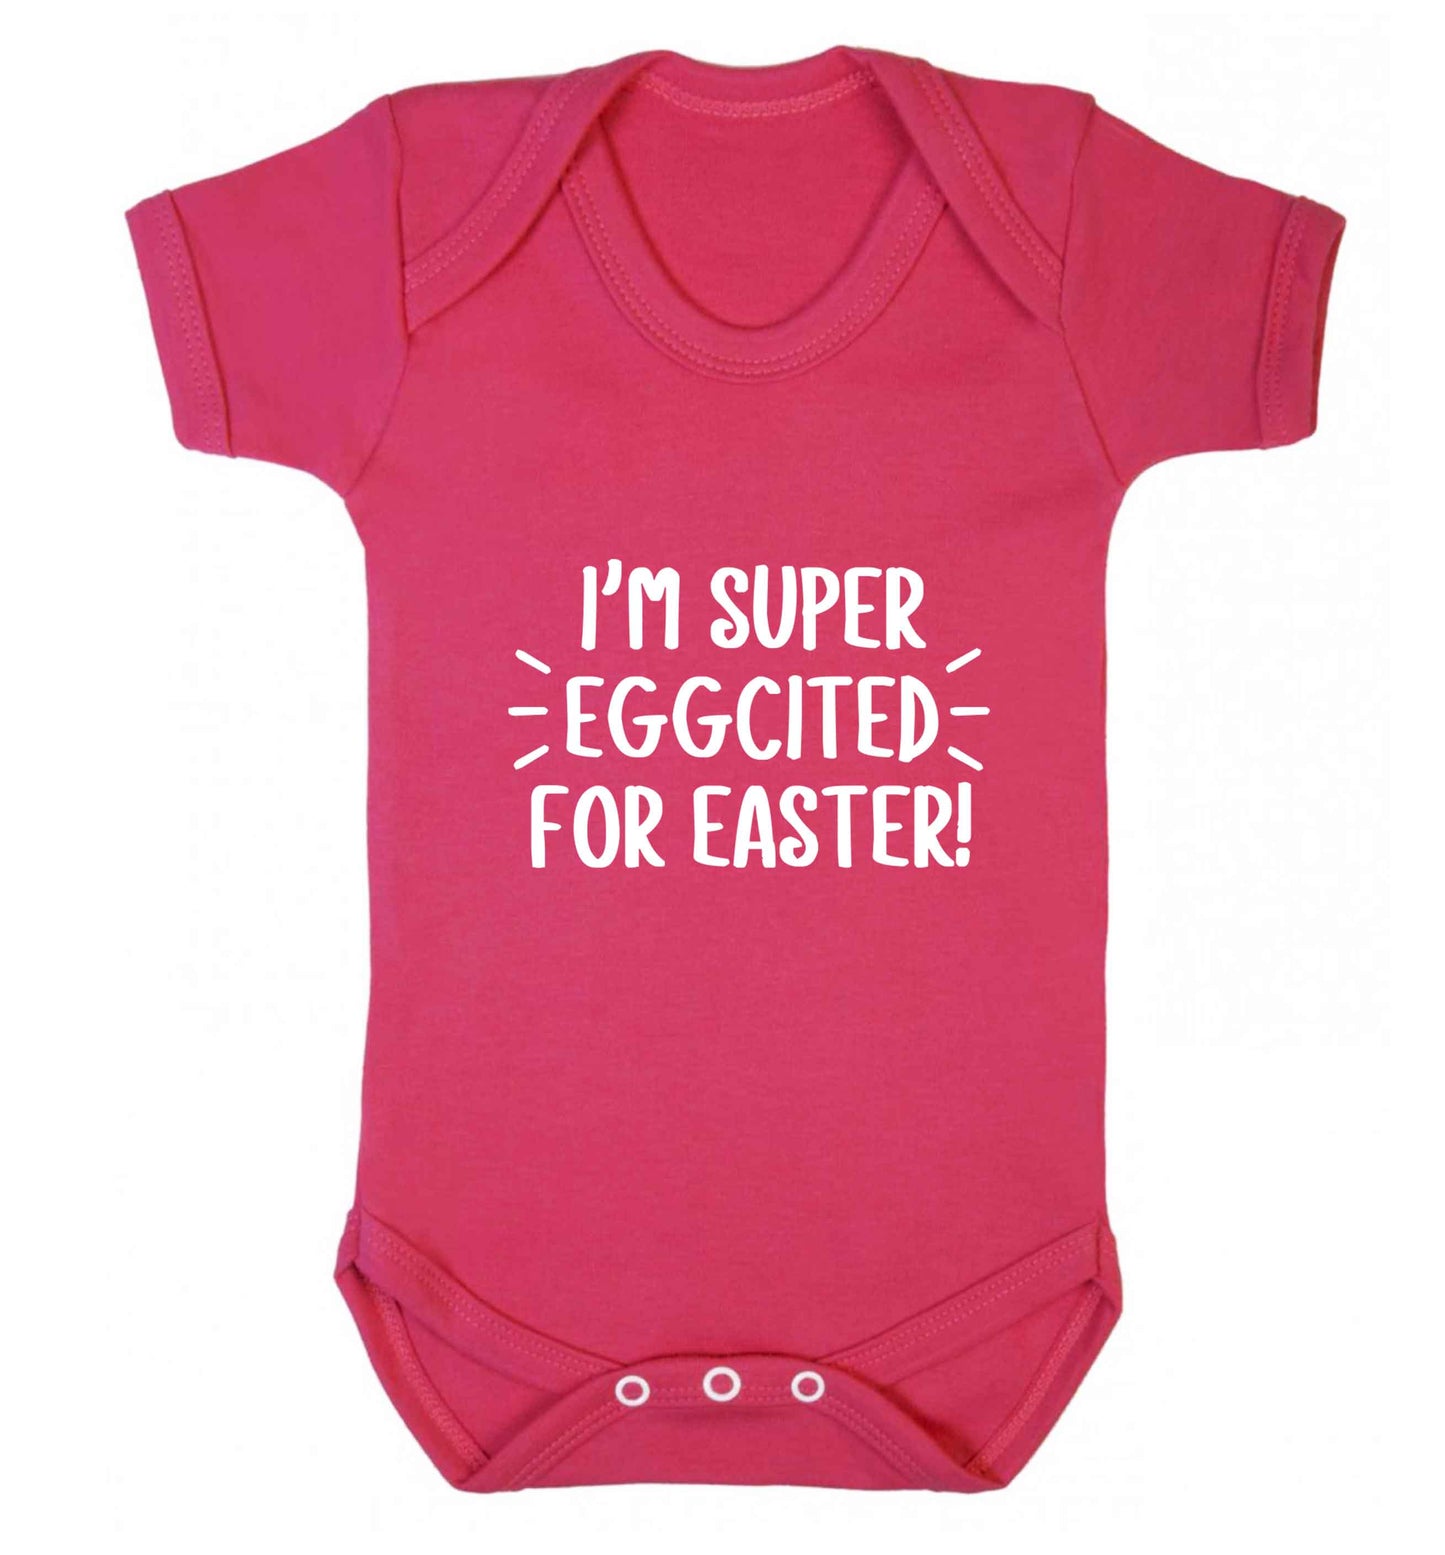 I'm super eggcited for Easter baby vest dark pink 18-24 months